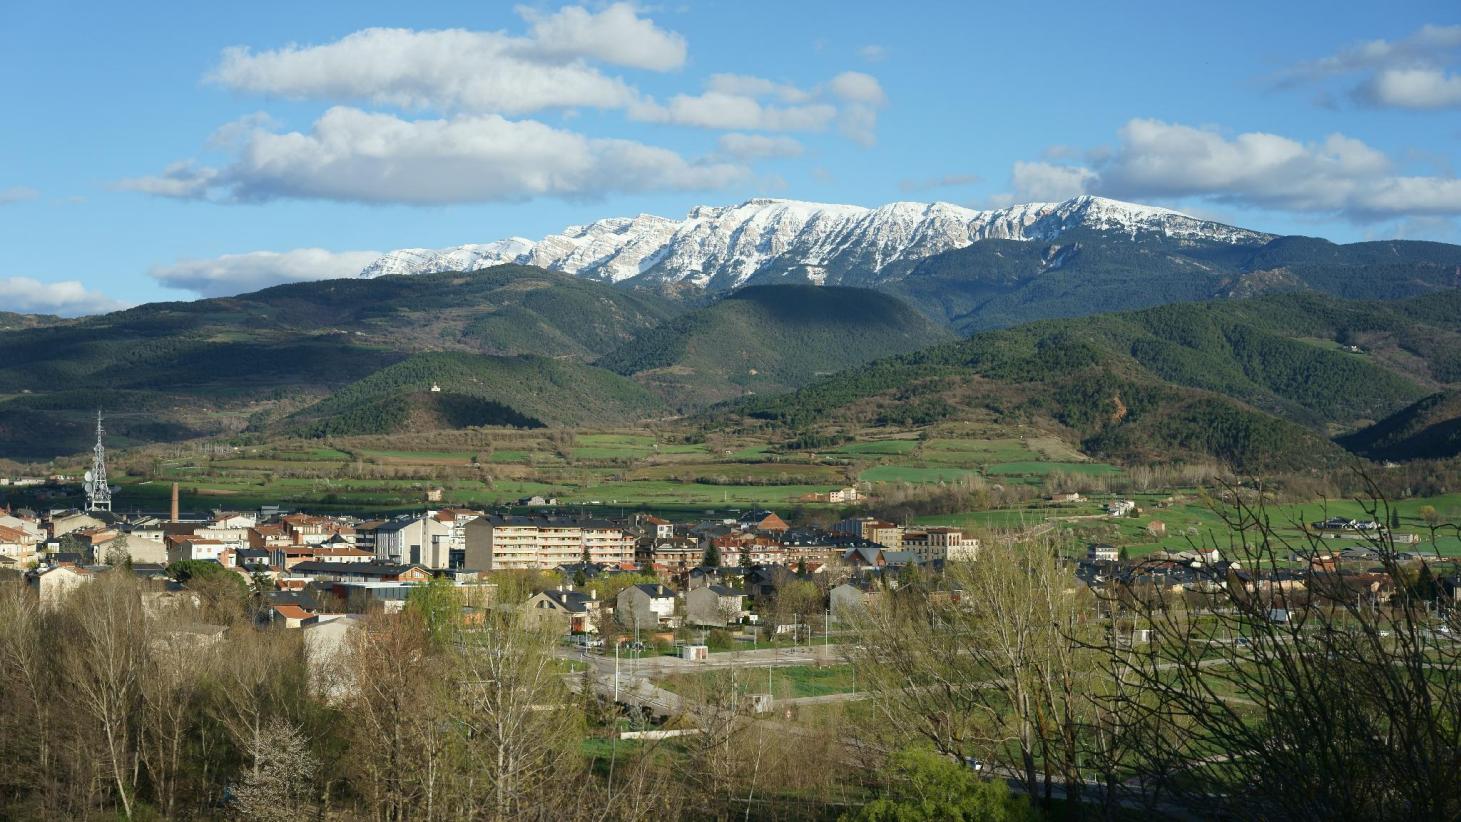 Amb l'arribada de l'hivern, La Seu d'Urgell atreu molt turisme